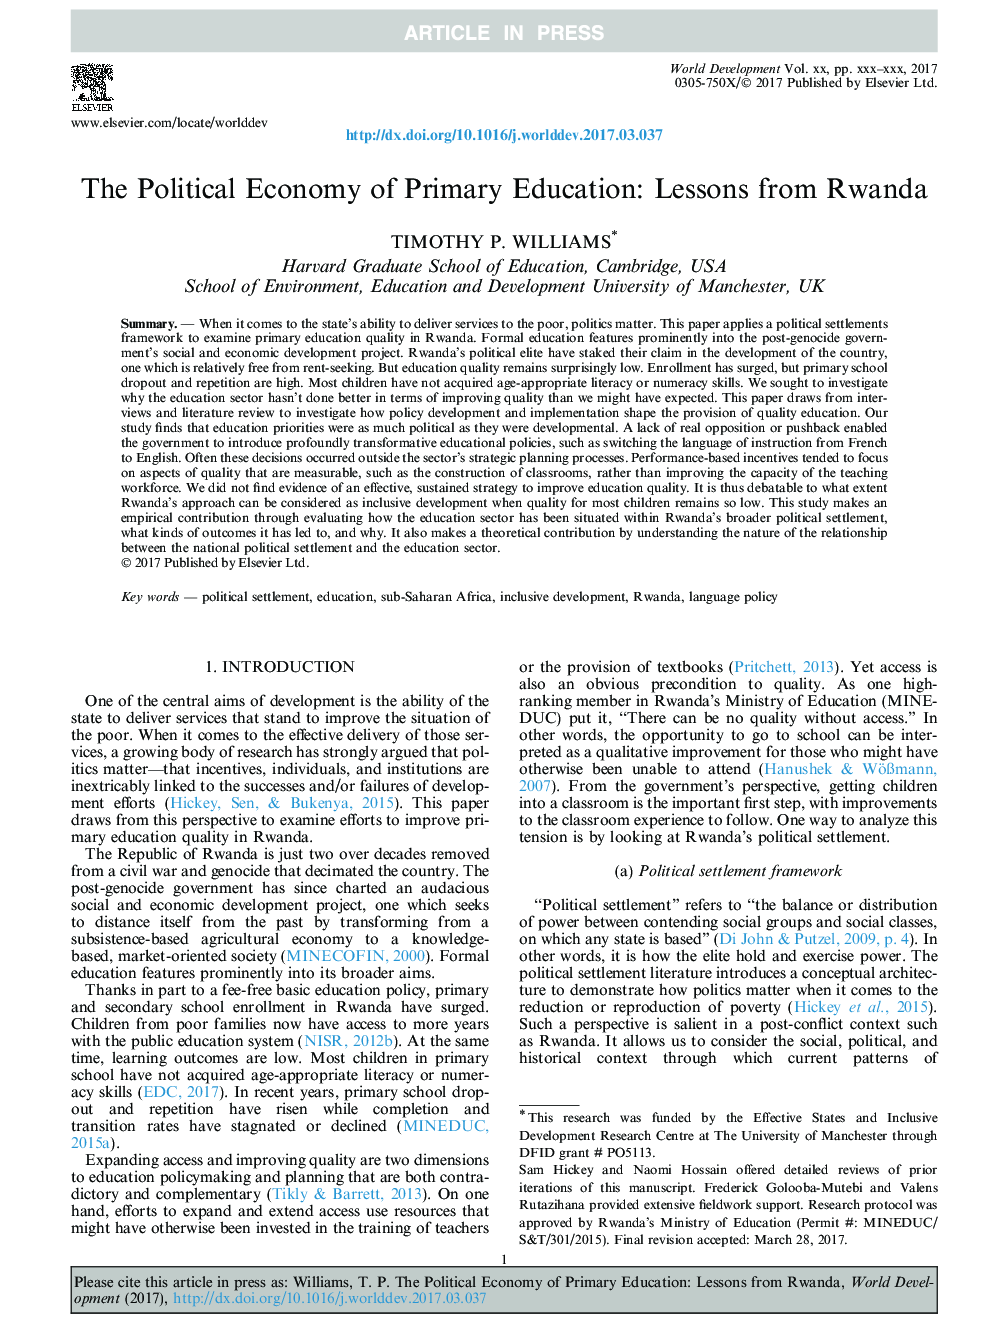 اقتصاد سیاسی ابتدایی: درس های رواندا 